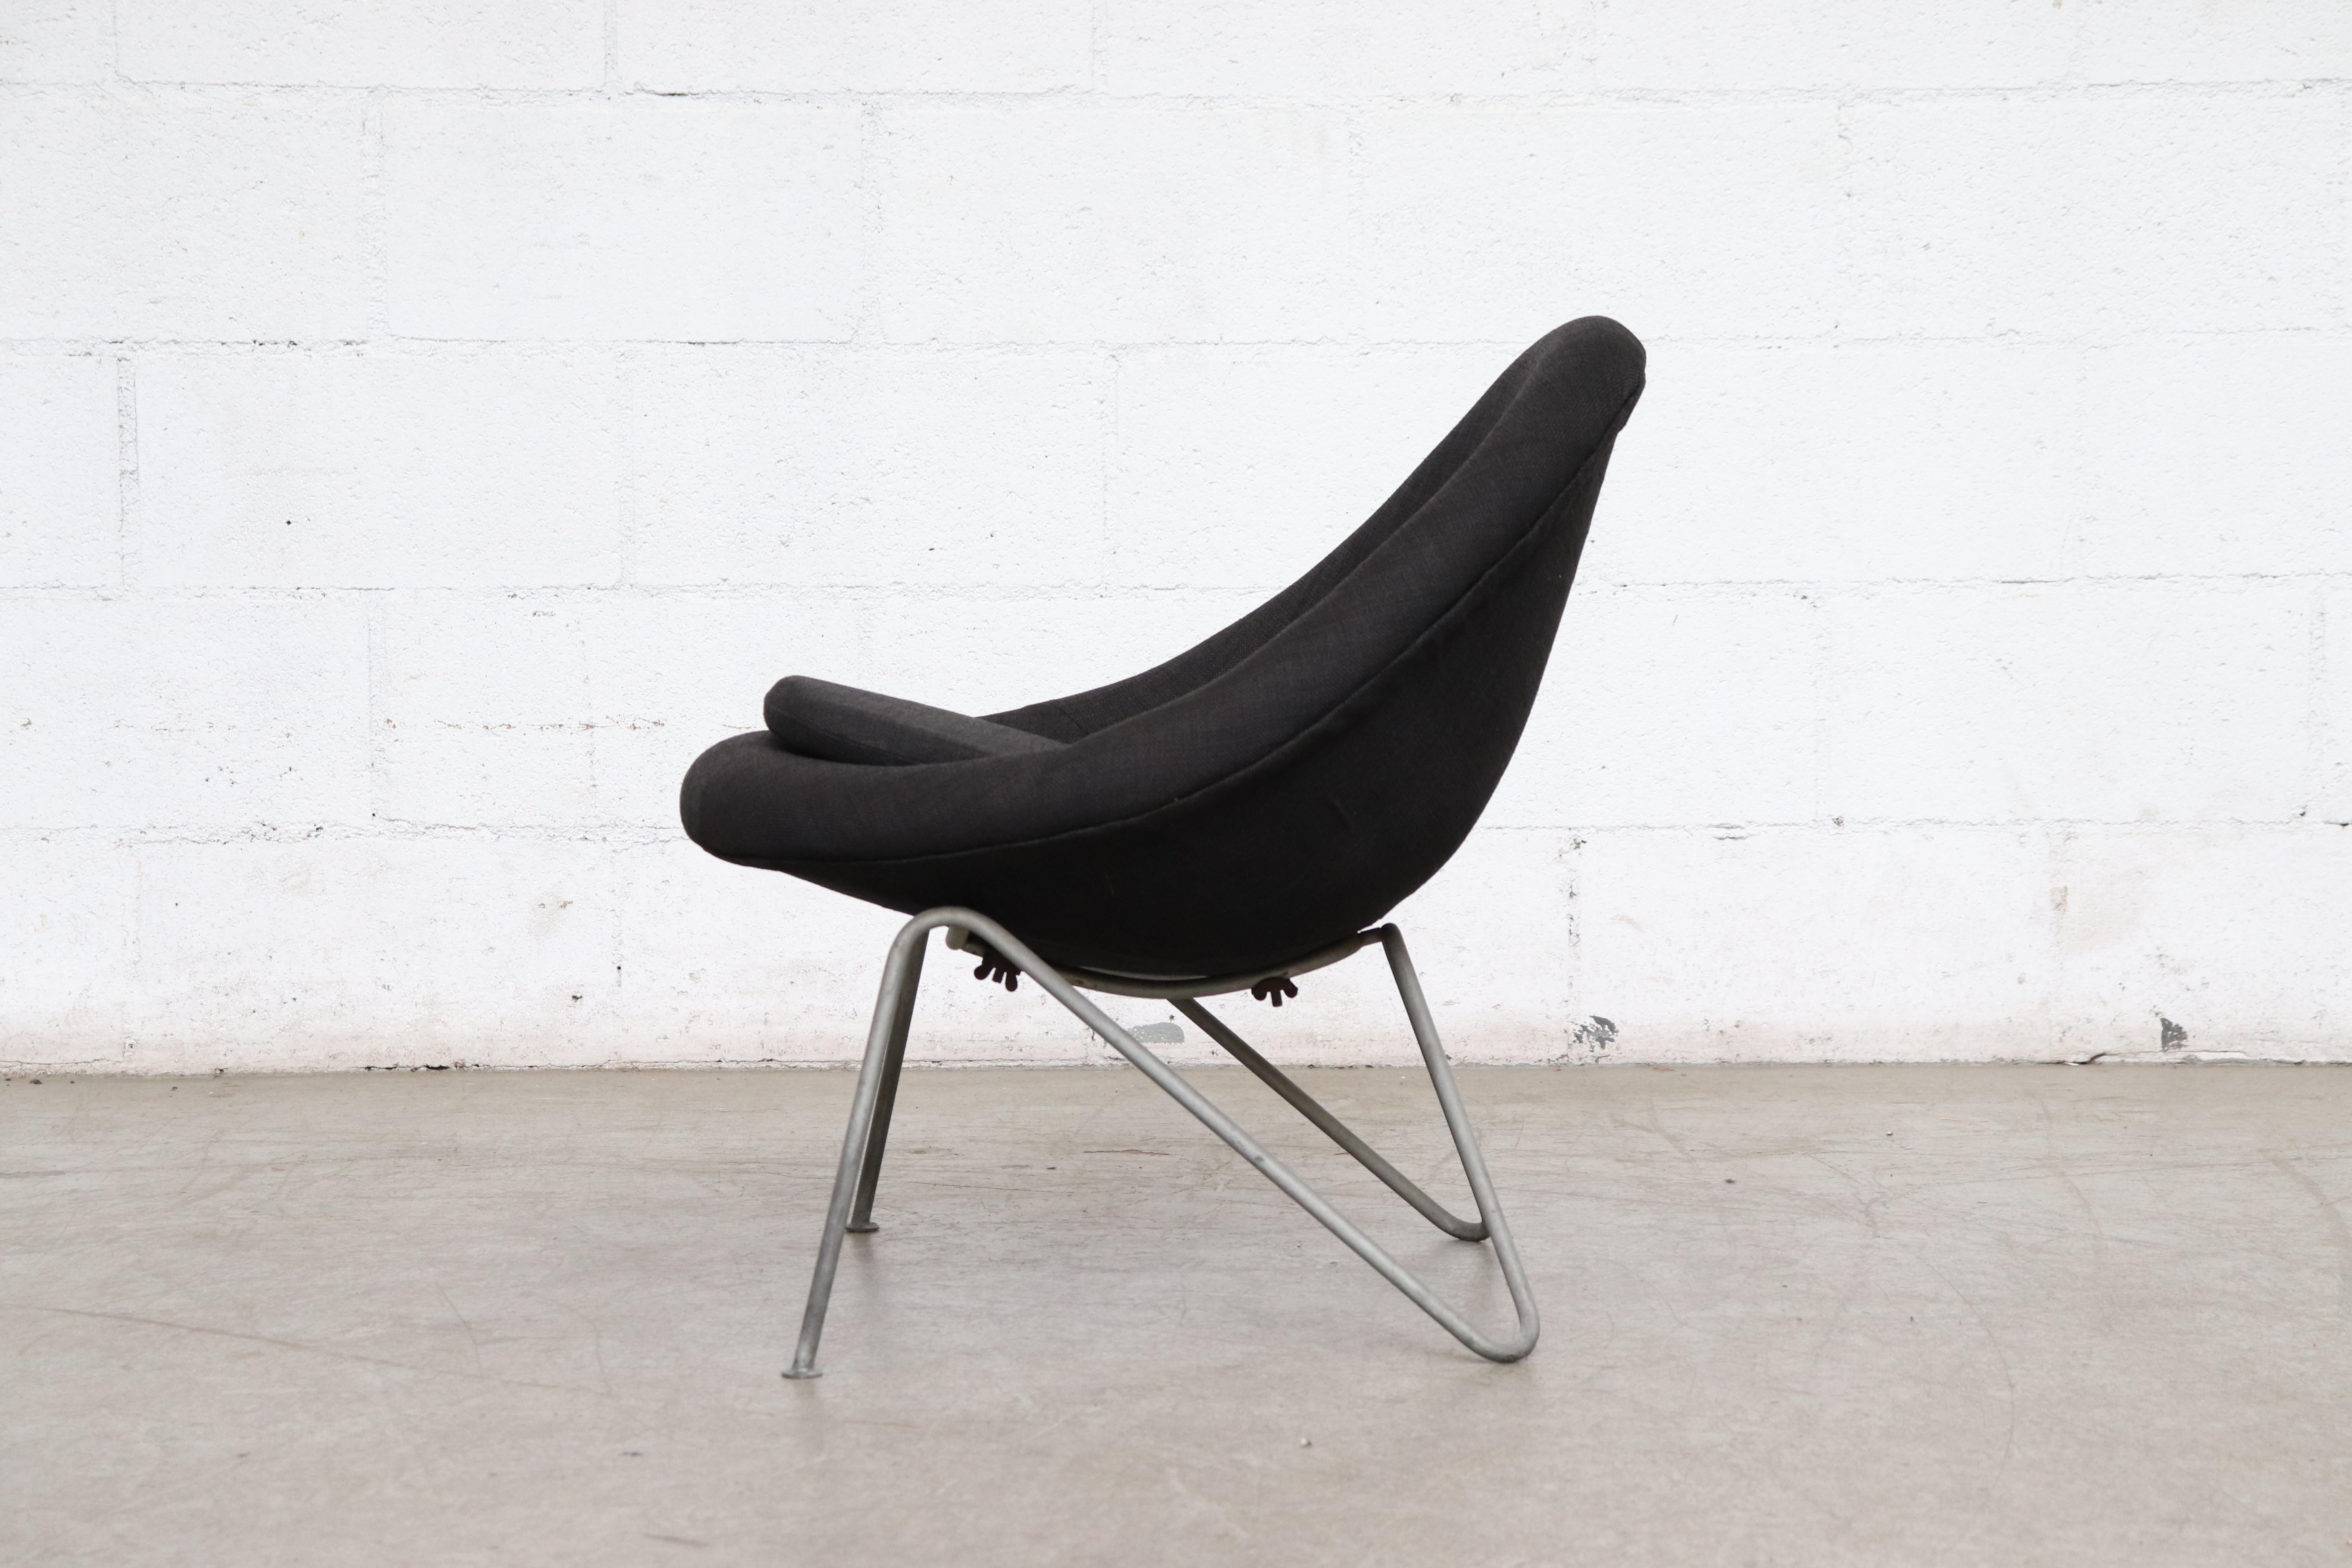 Mid-Century Modern Petite chaise seau noire du milieu du siècle dernier d'inspiration Pierre Paulin avec pieds en épingle à cheveux grise en vente